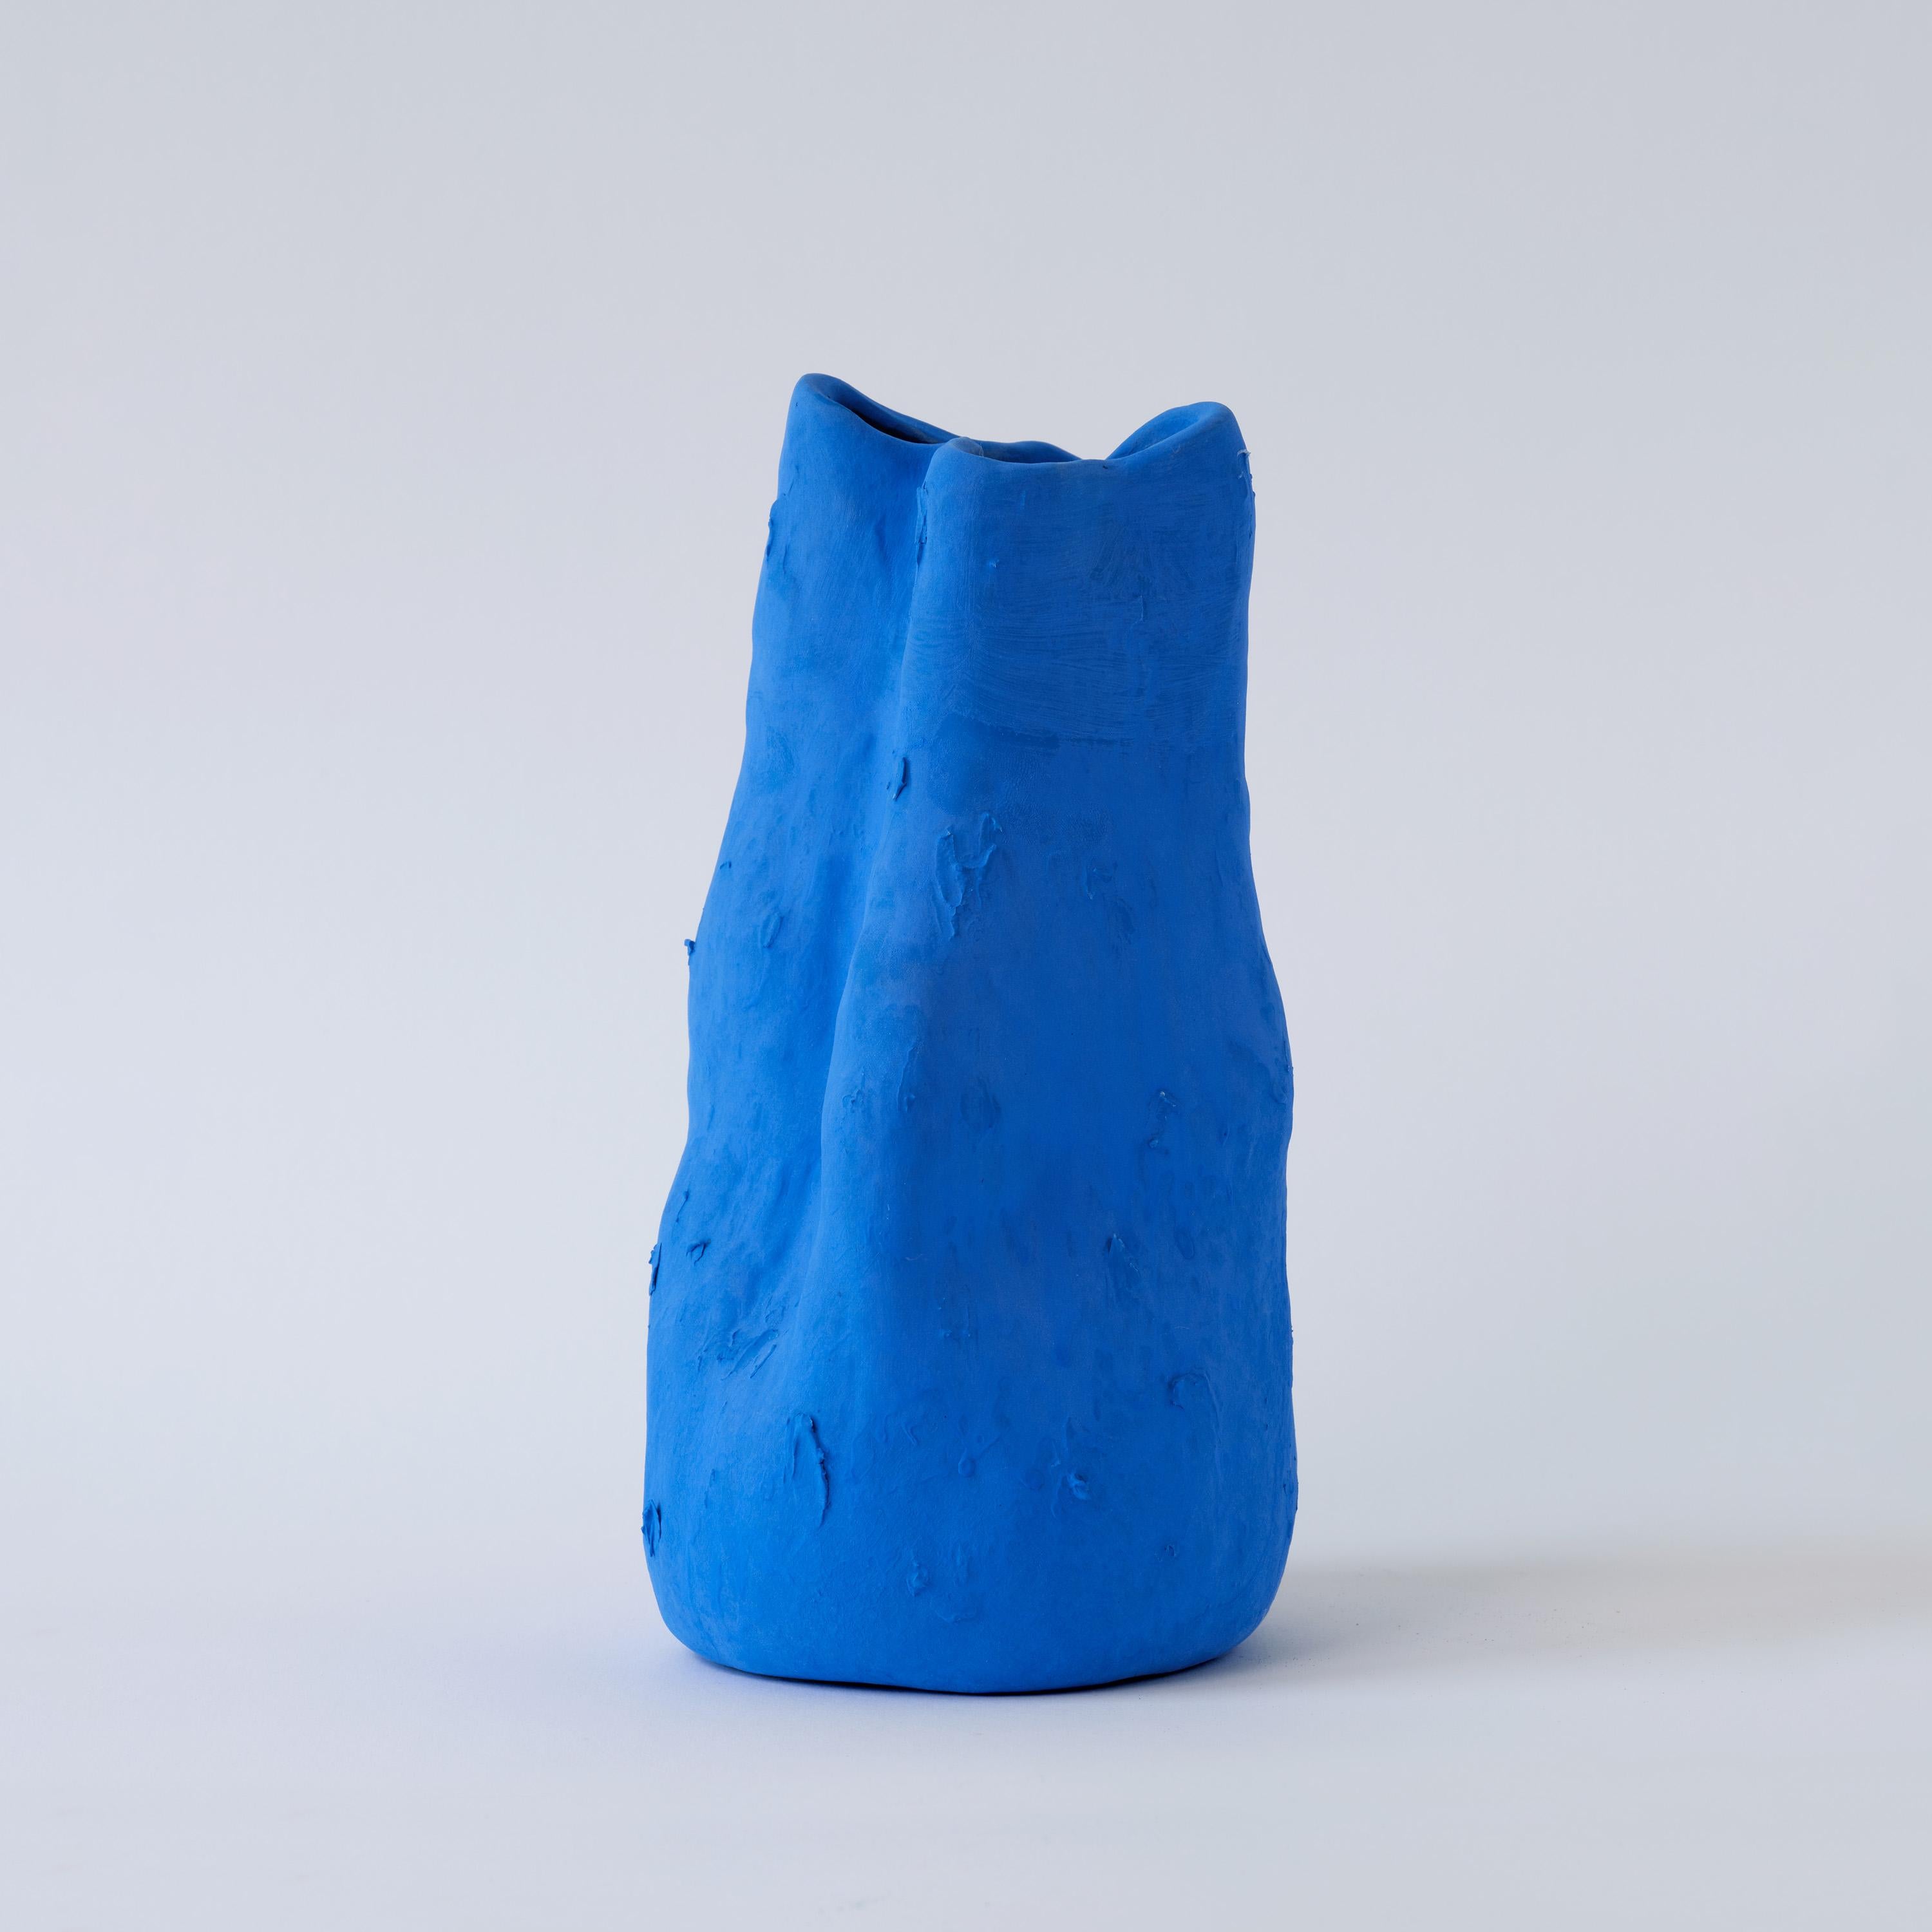 Mit ihrer ruhigen, mattblauen Farbe und ihrer echten, unglasierten Textur verkörpert die Georgia-Vase den kühnen und fantasievollen Geist der künstlerischen Vision von Yves Klein.

In der heutigen umweltbewussten Welt ist Porzellan aufgrund seiner